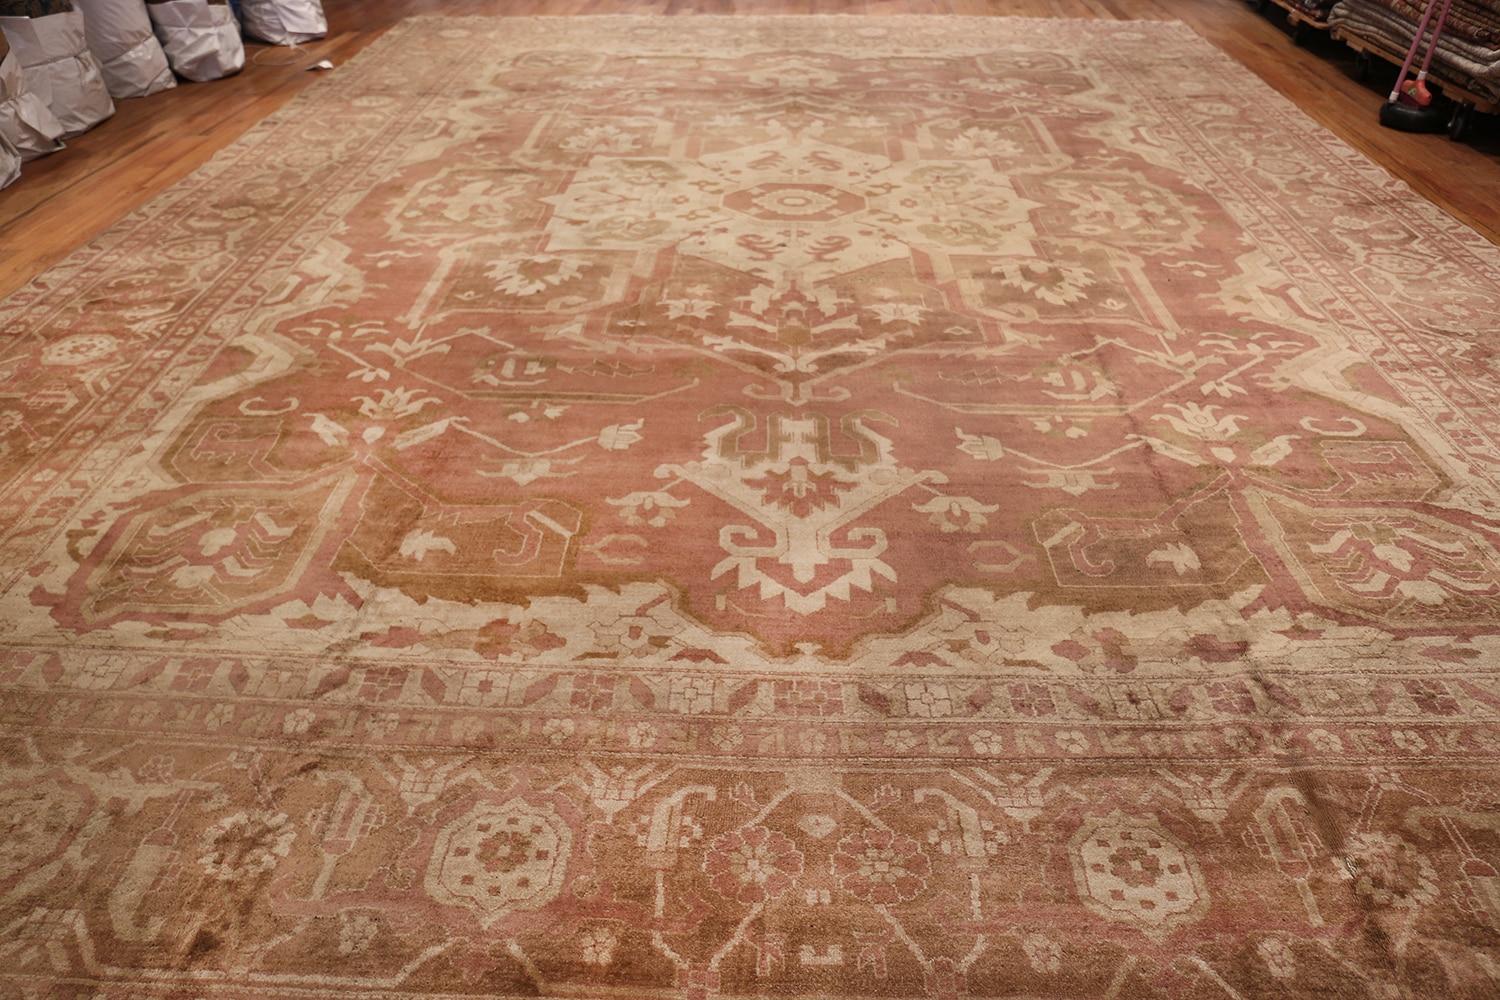 Großer antiker indischer Amritsar-Teppich, Herkunftsland: Indien, um 1900 - Größe: 14 ft 5 in x 18 ft 8 in (4,39 m x 5,69 m)

Ein großformatiger klassischer persischer Heriz- oder Serapi-Teppich bildet den Ausgangspunkt für diesen eleganten und